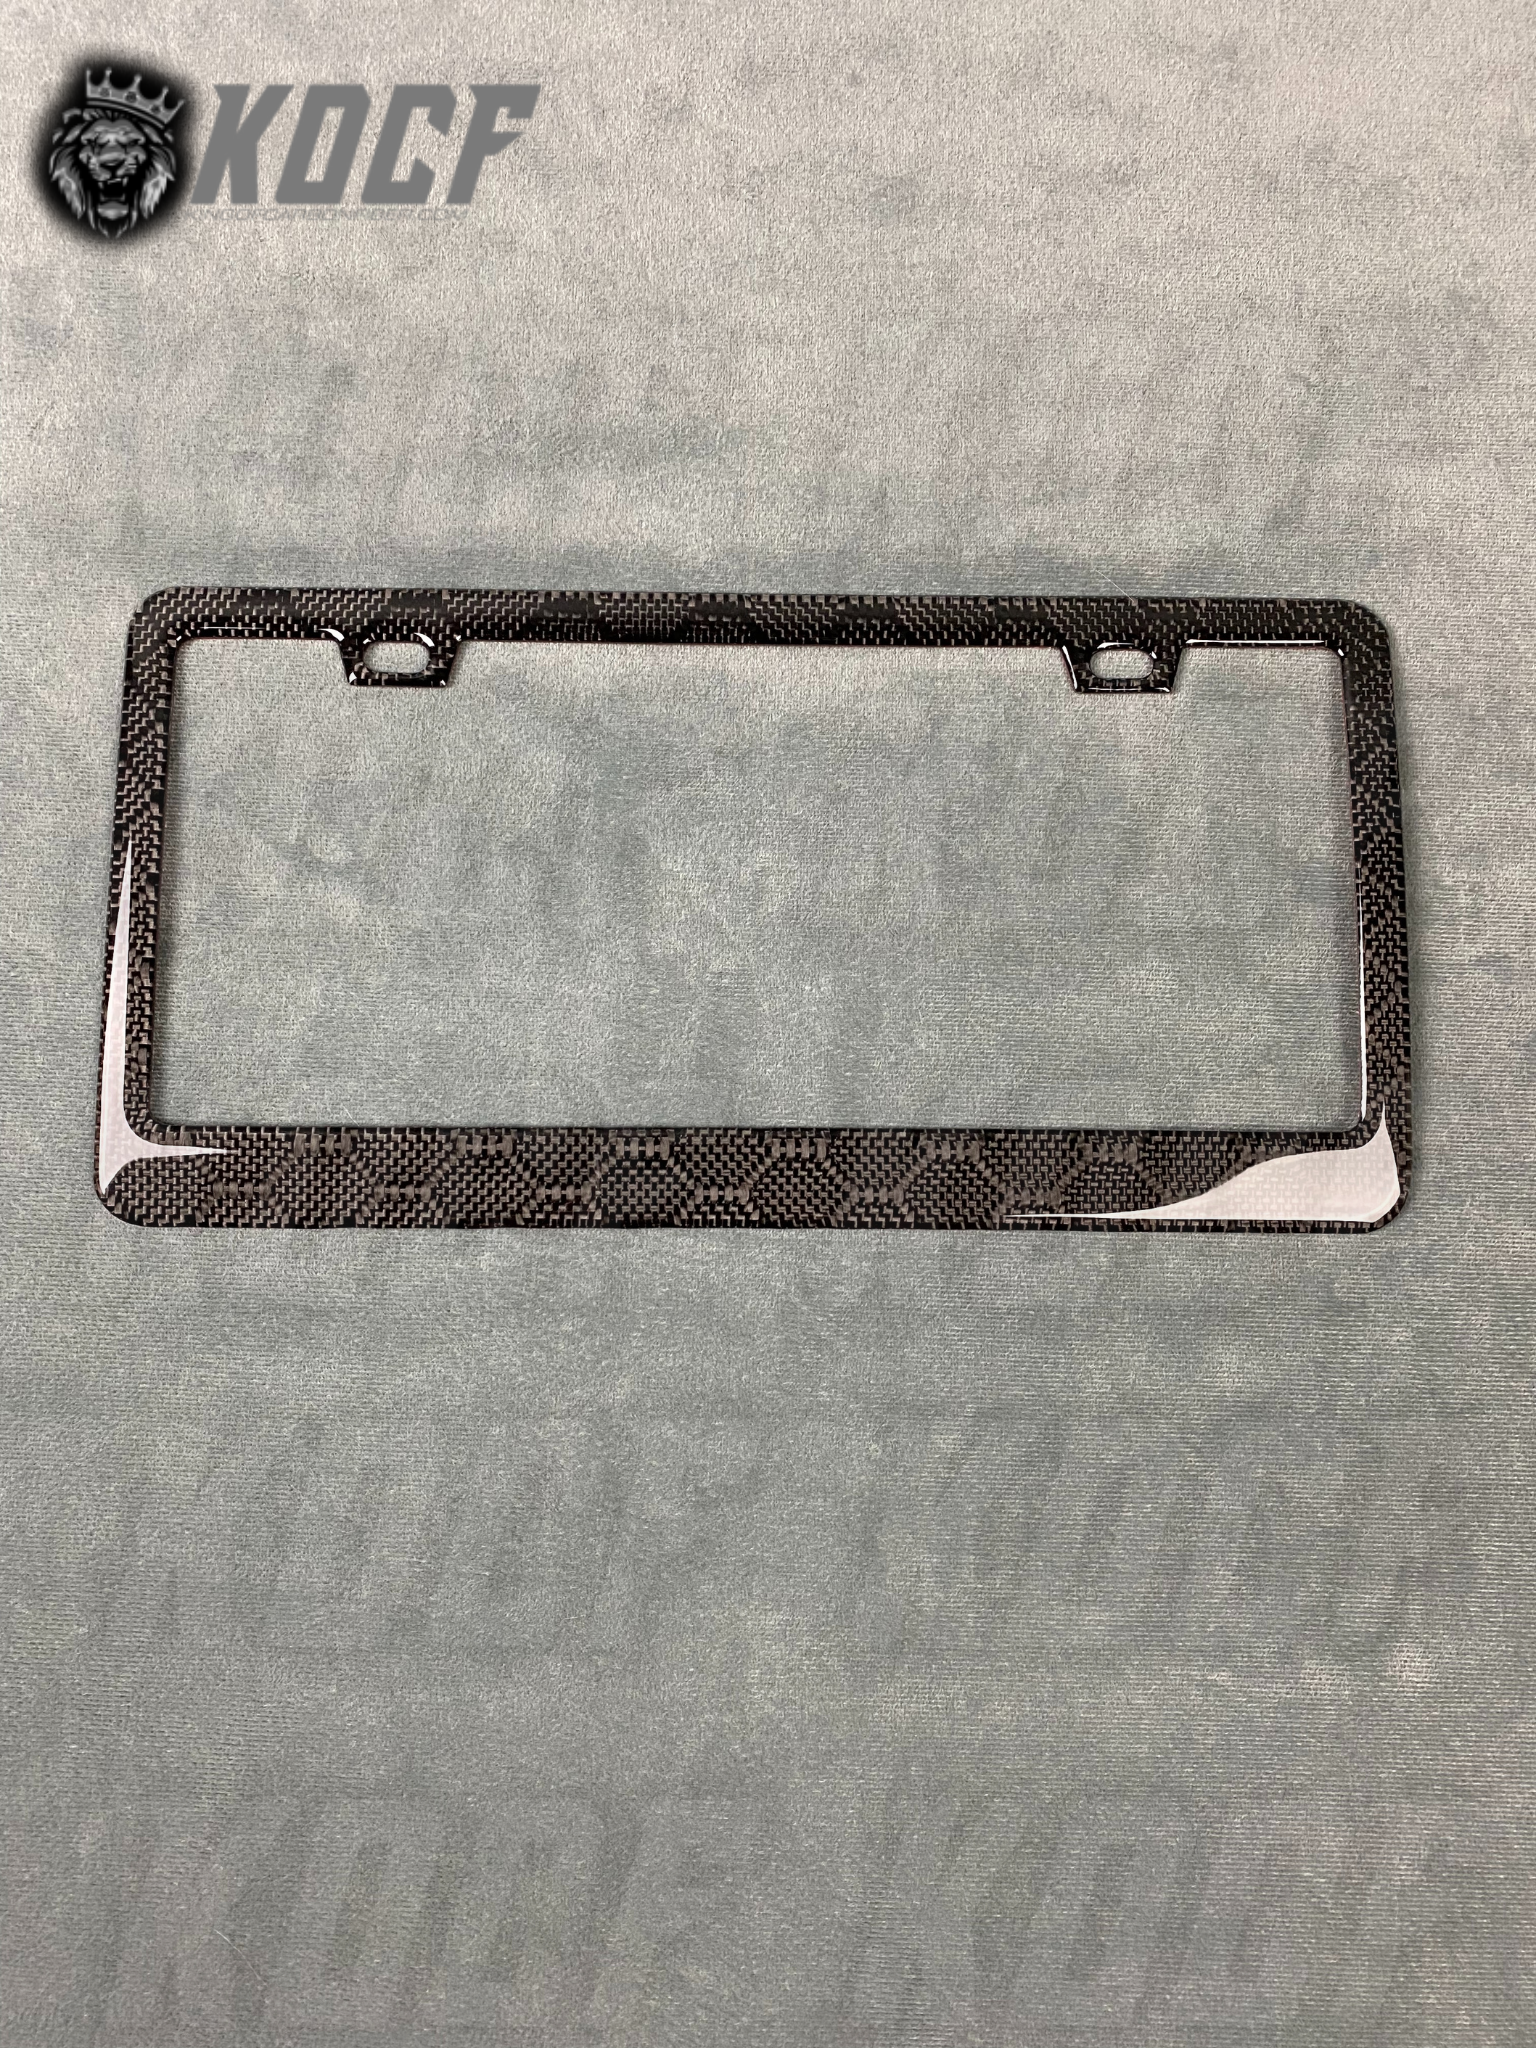 Carbon Fiber License Plate Frame - KOCF.com - Car Parts